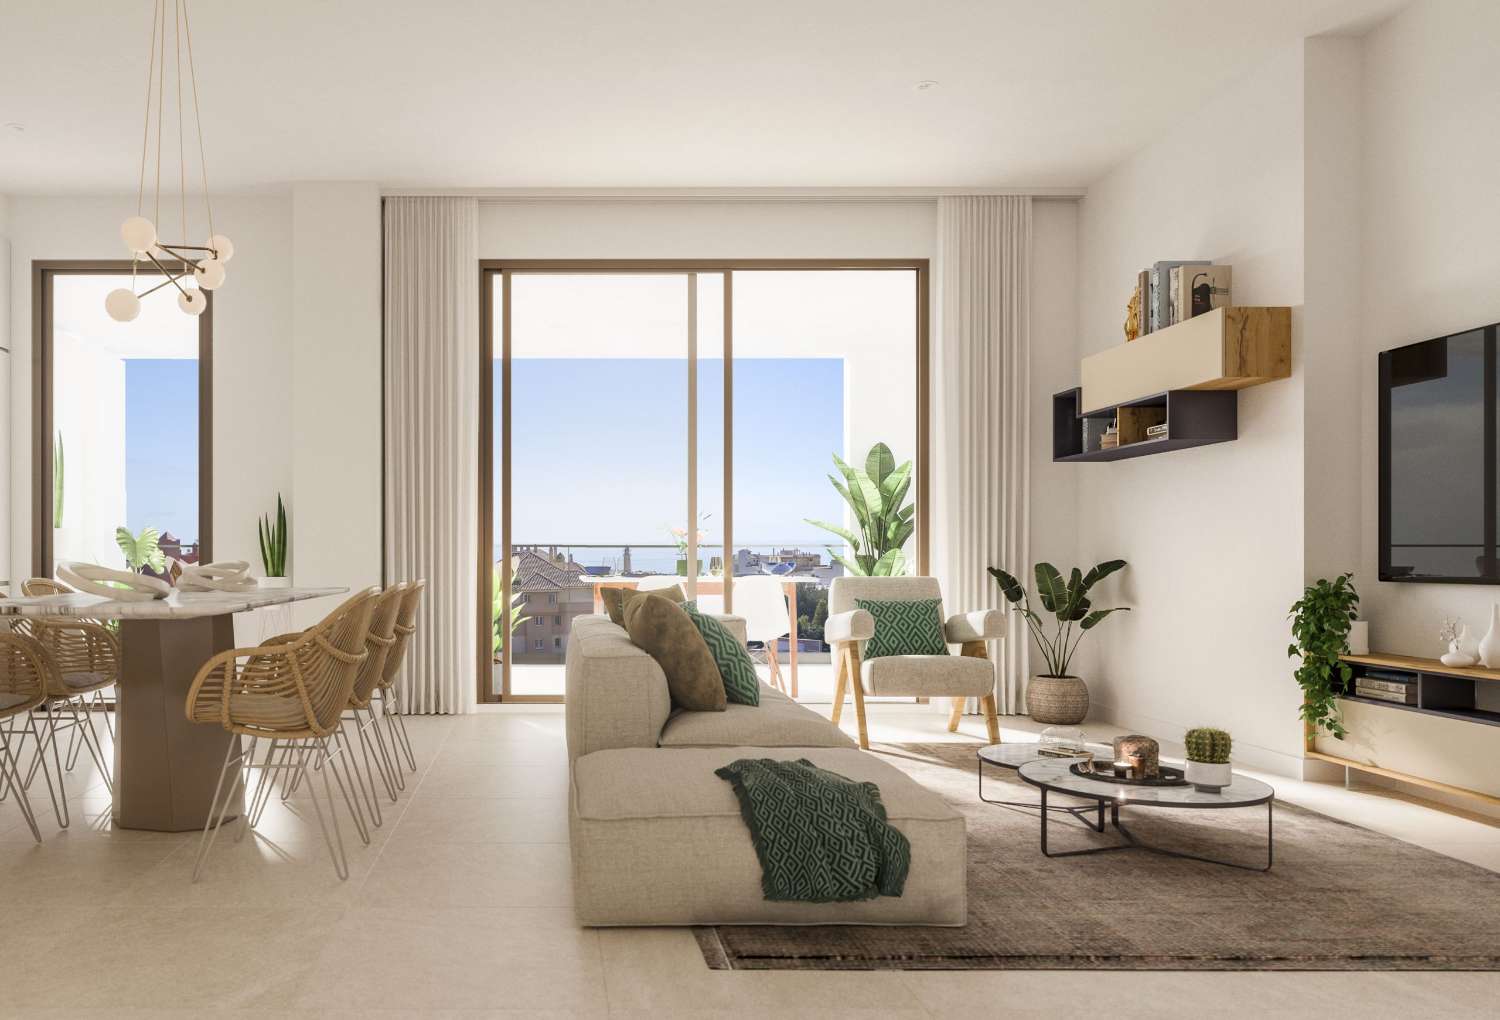 2 o 3 dormitorios, 2 baños y terraza con vistas al mar – desde 218.000 €